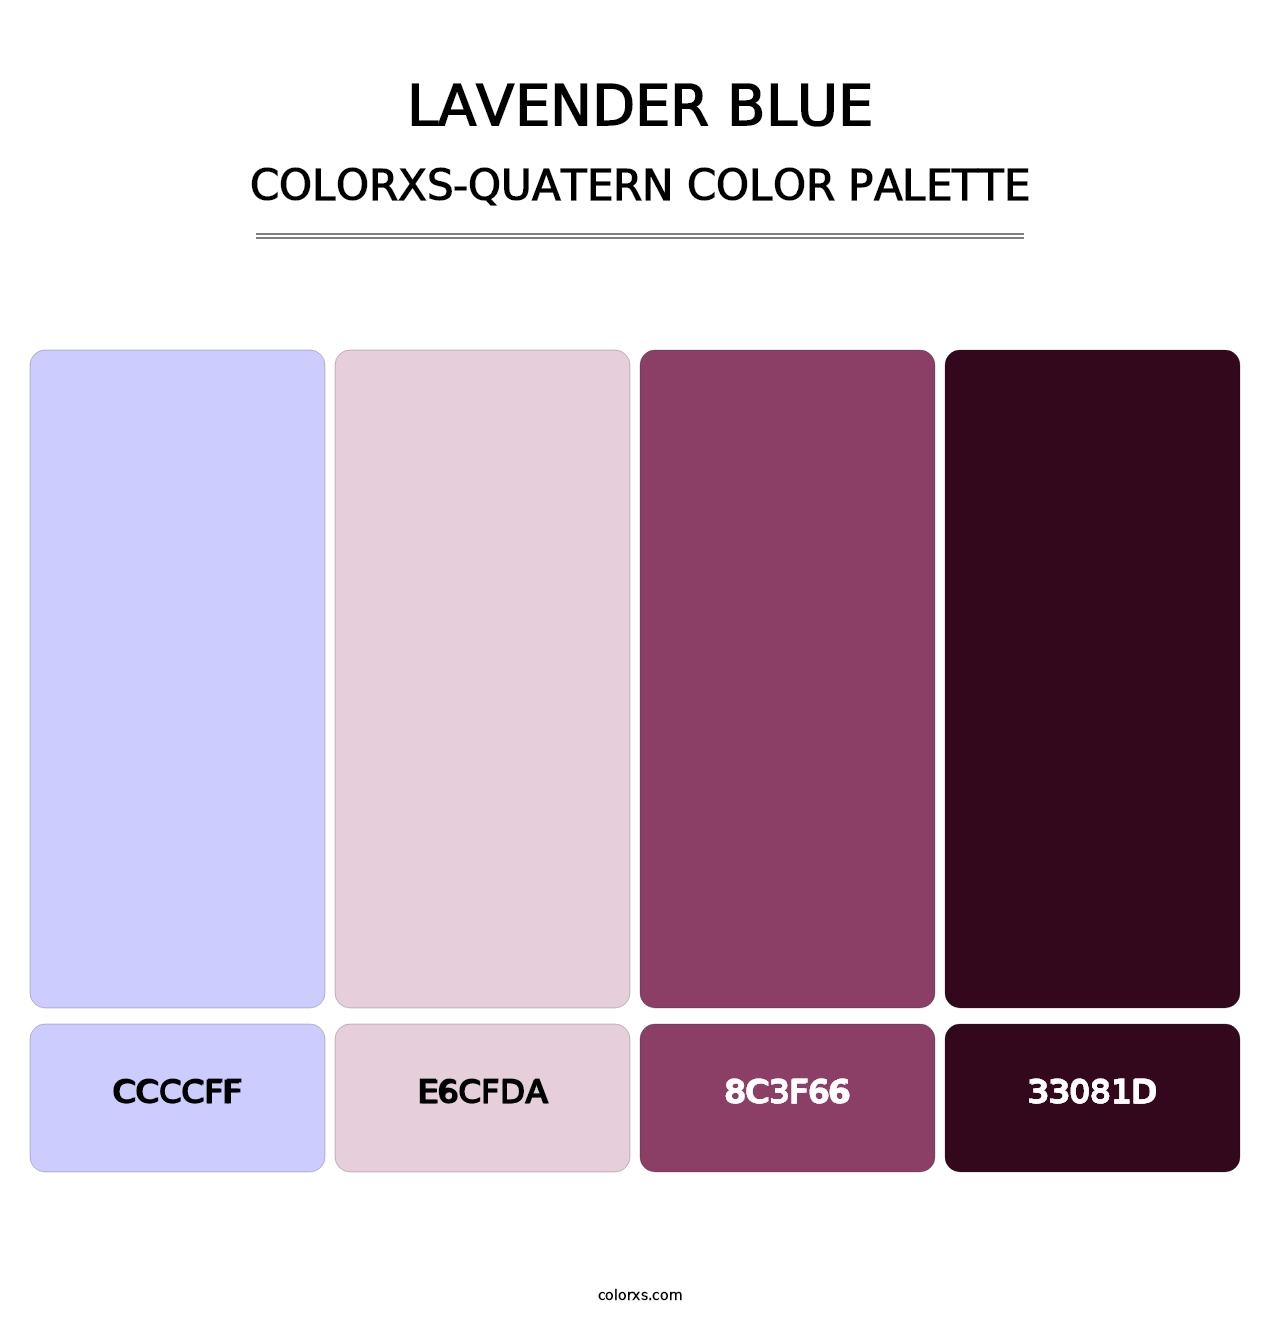 Lavender Blue - Colorxs Quatern Palette